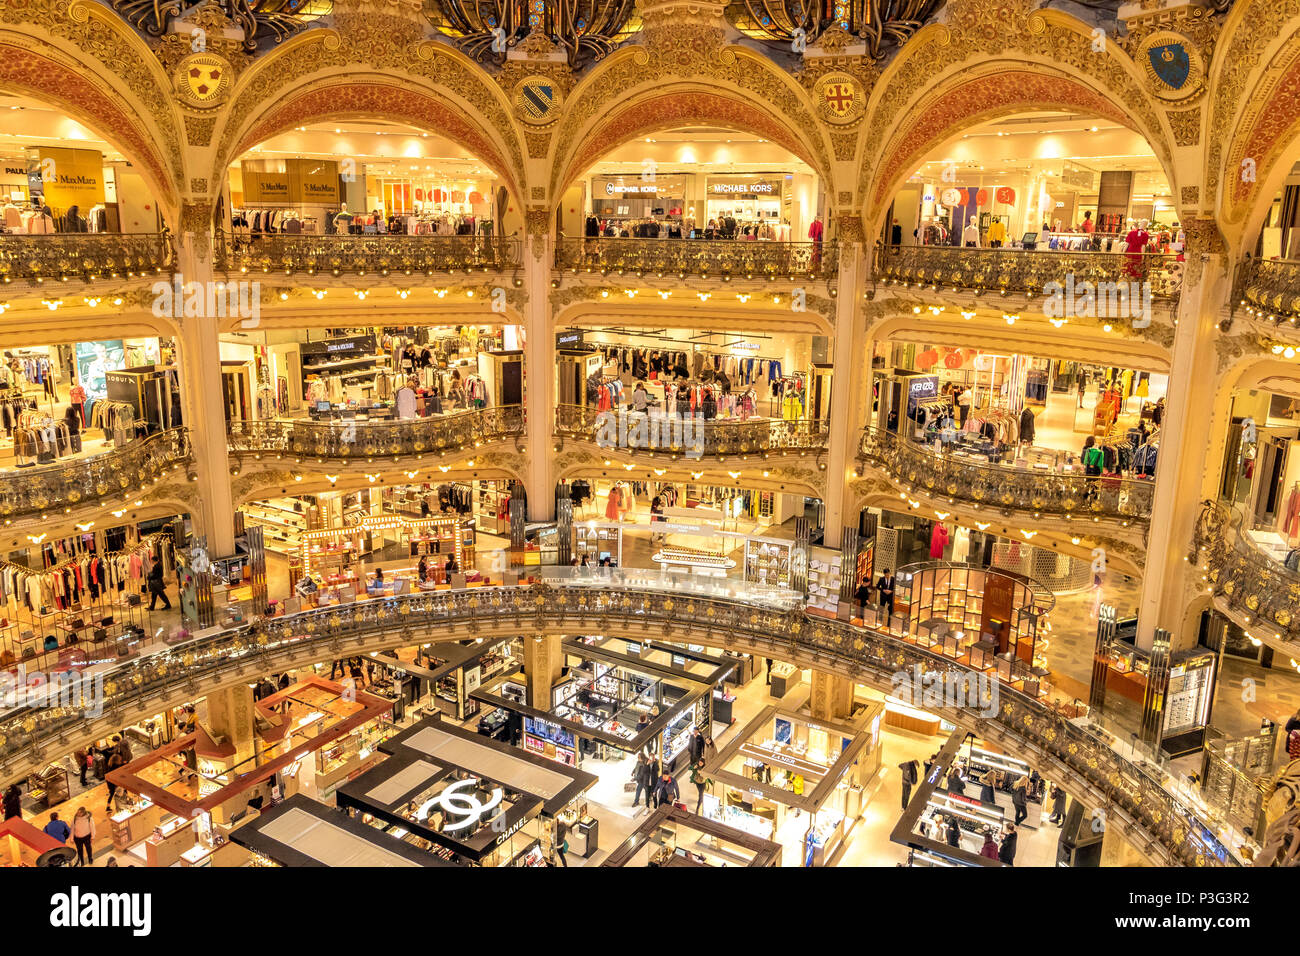 Cartier, luxury goods shop, Champs-Élysées, Paris, France, Europe,  PublicGround Stock Photo - Alamy